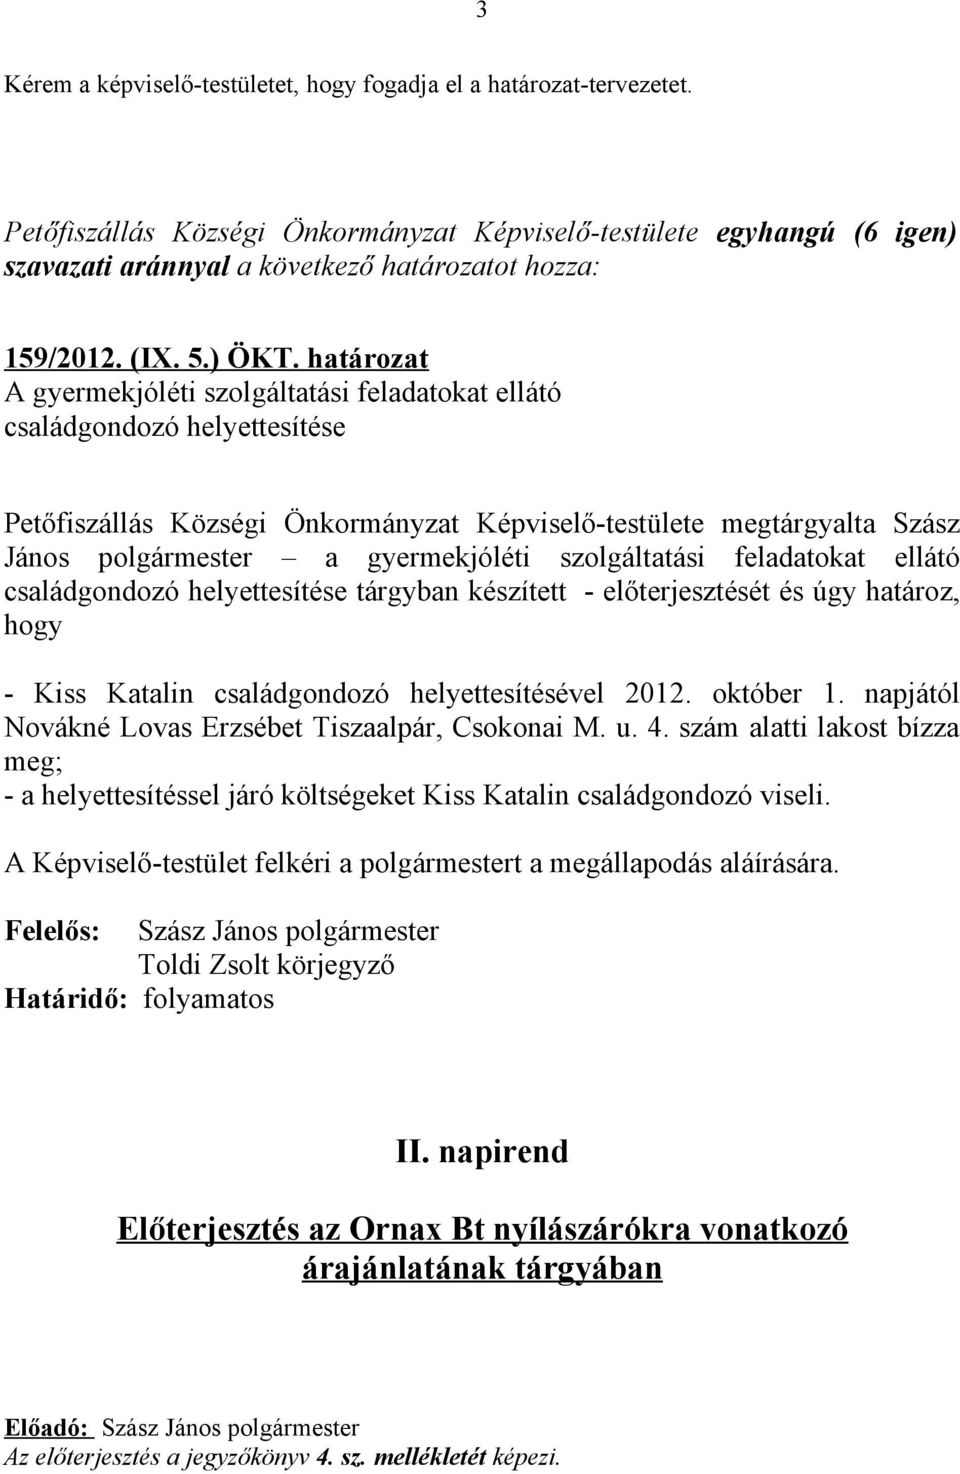 szolgáltatási feladatokat ellátó családgondozó helyettesítése tárgyban készített - előterjesztését és úgy határoz, hogy - Kiss Katalin családgondozó helyettesítésével 2012. október 1.